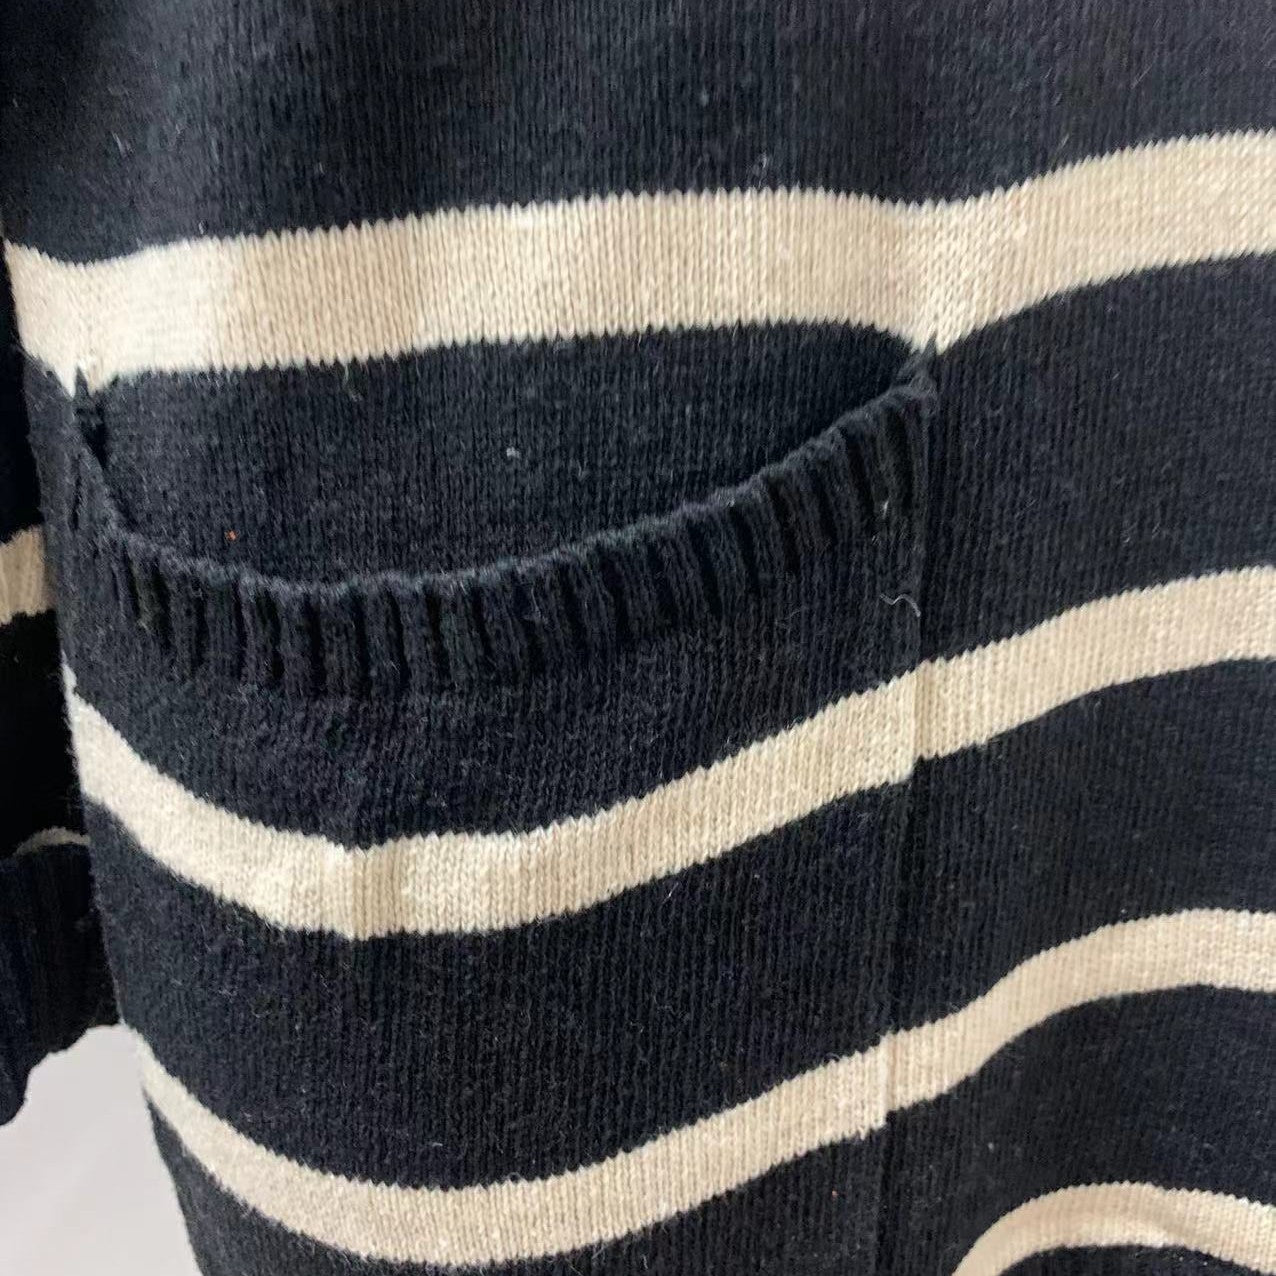 Anita's stylish striped sweater.